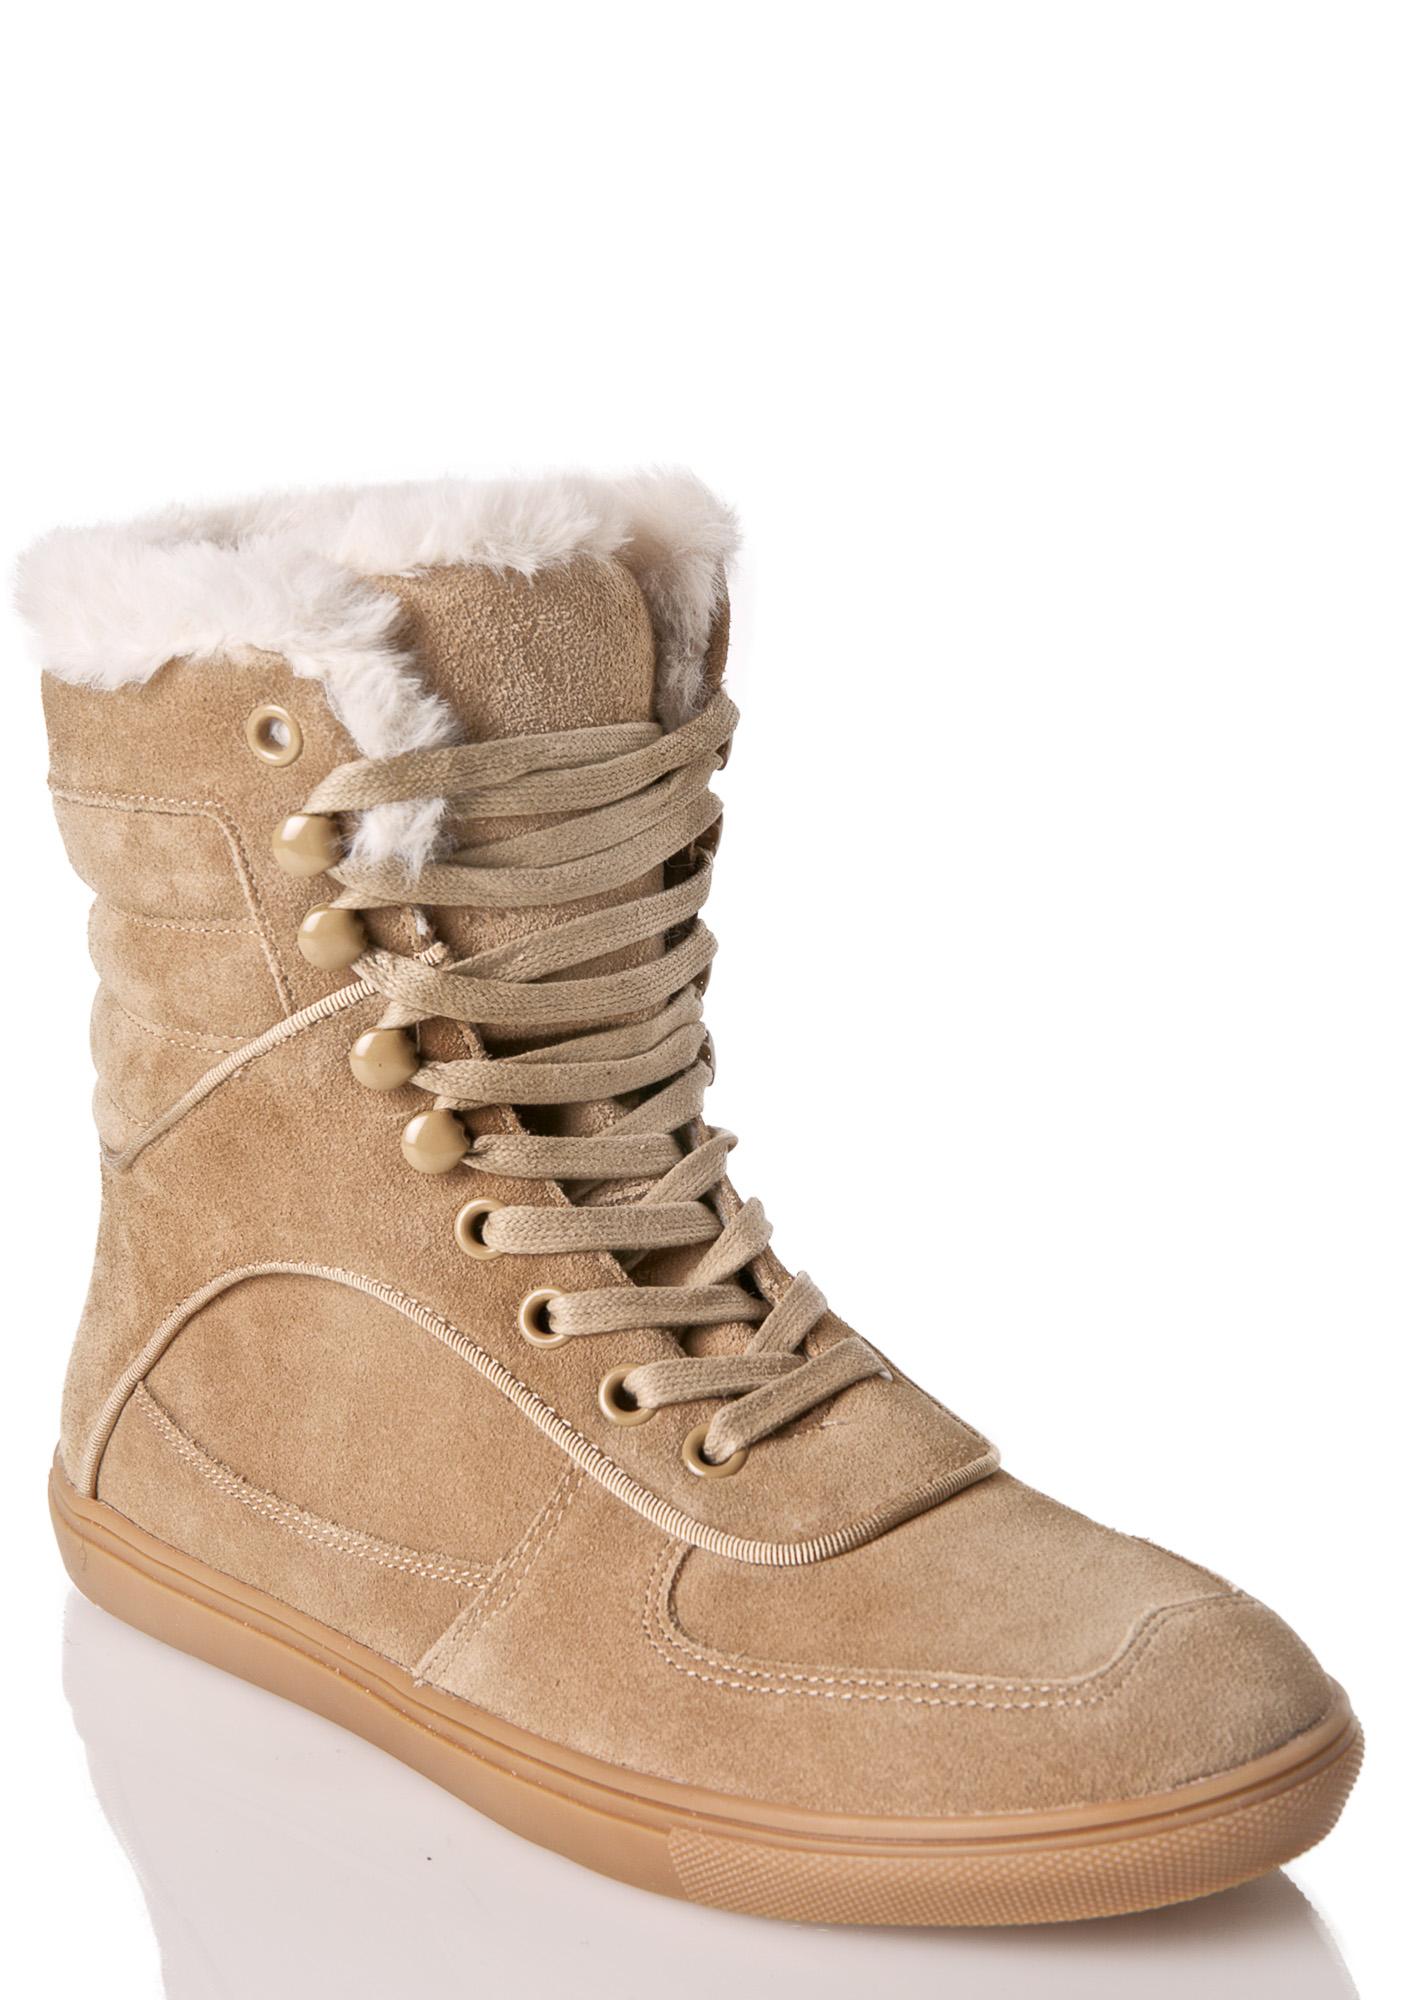 J Slides Denver Lace-Up Sneaker Boots | Dolls Kill